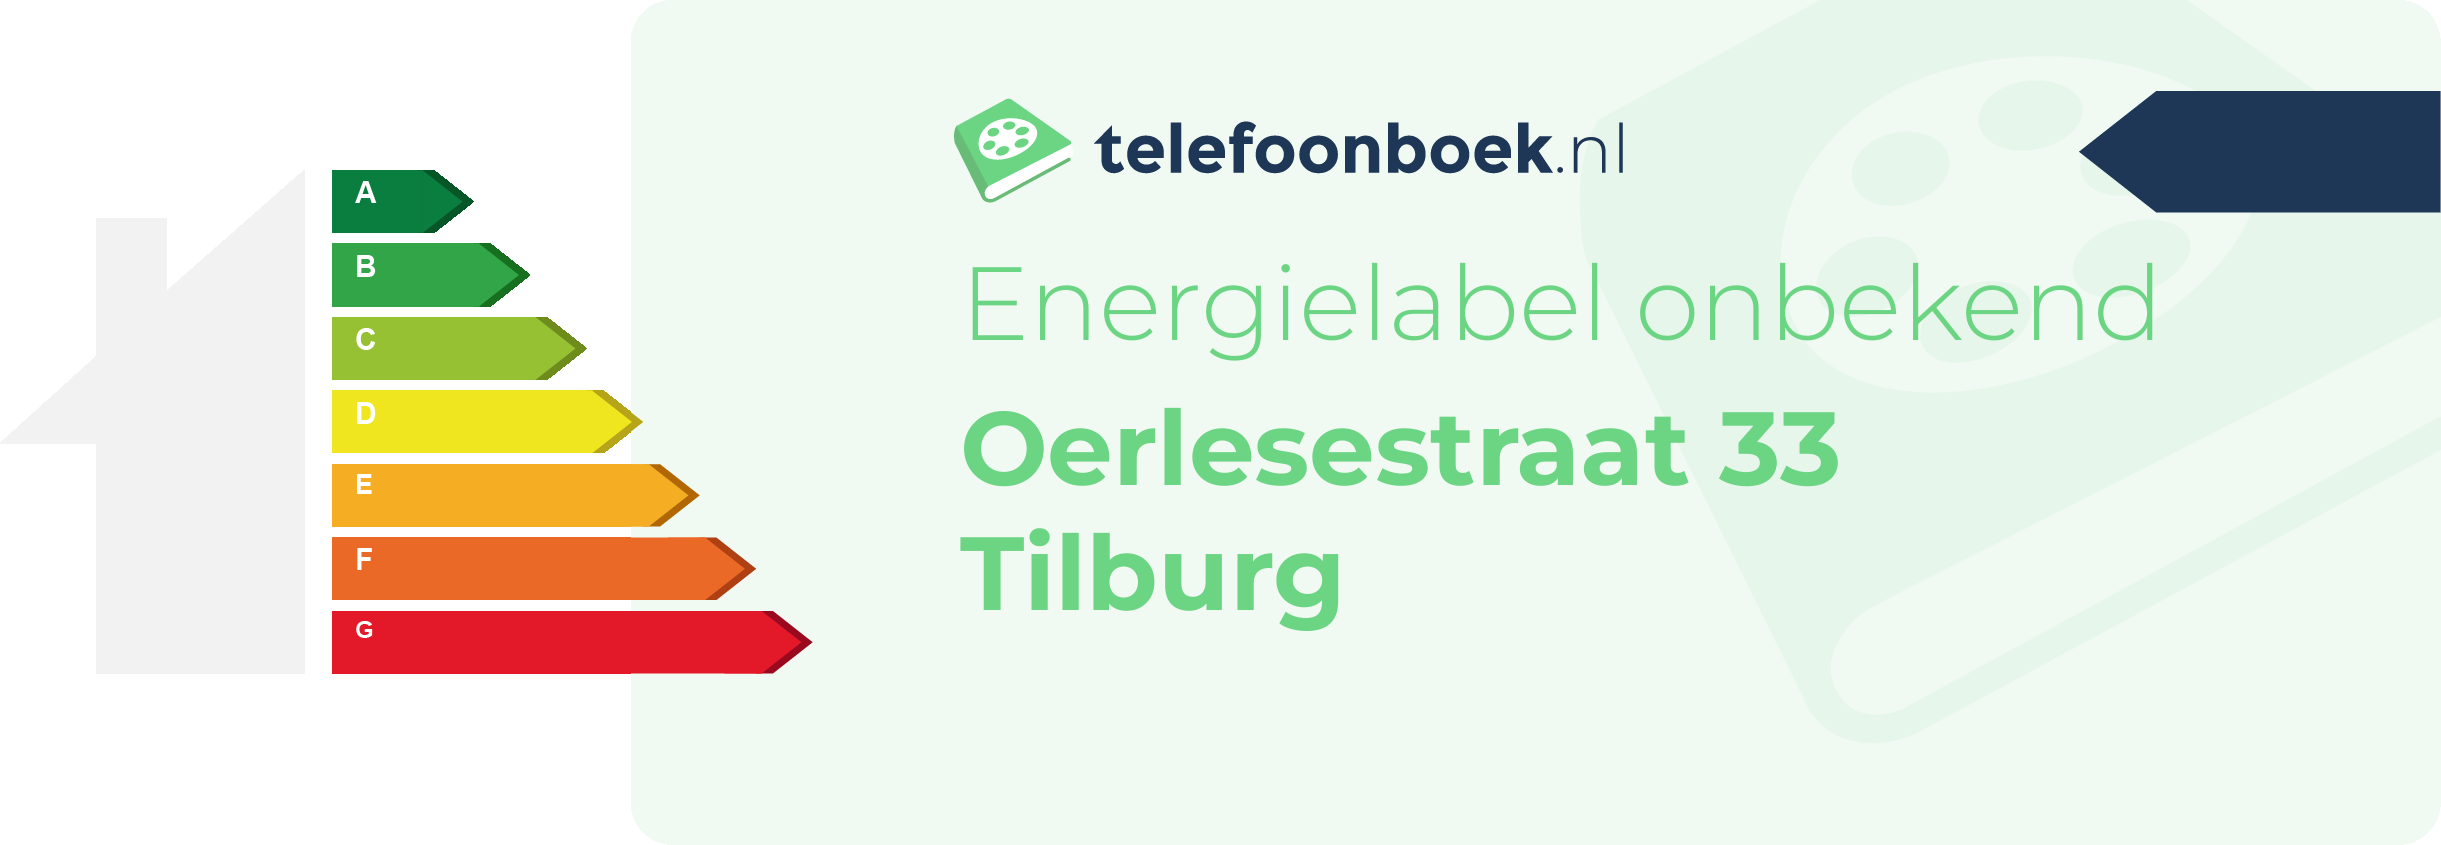 Energielabel Oerlesestraat 33 Tilburg